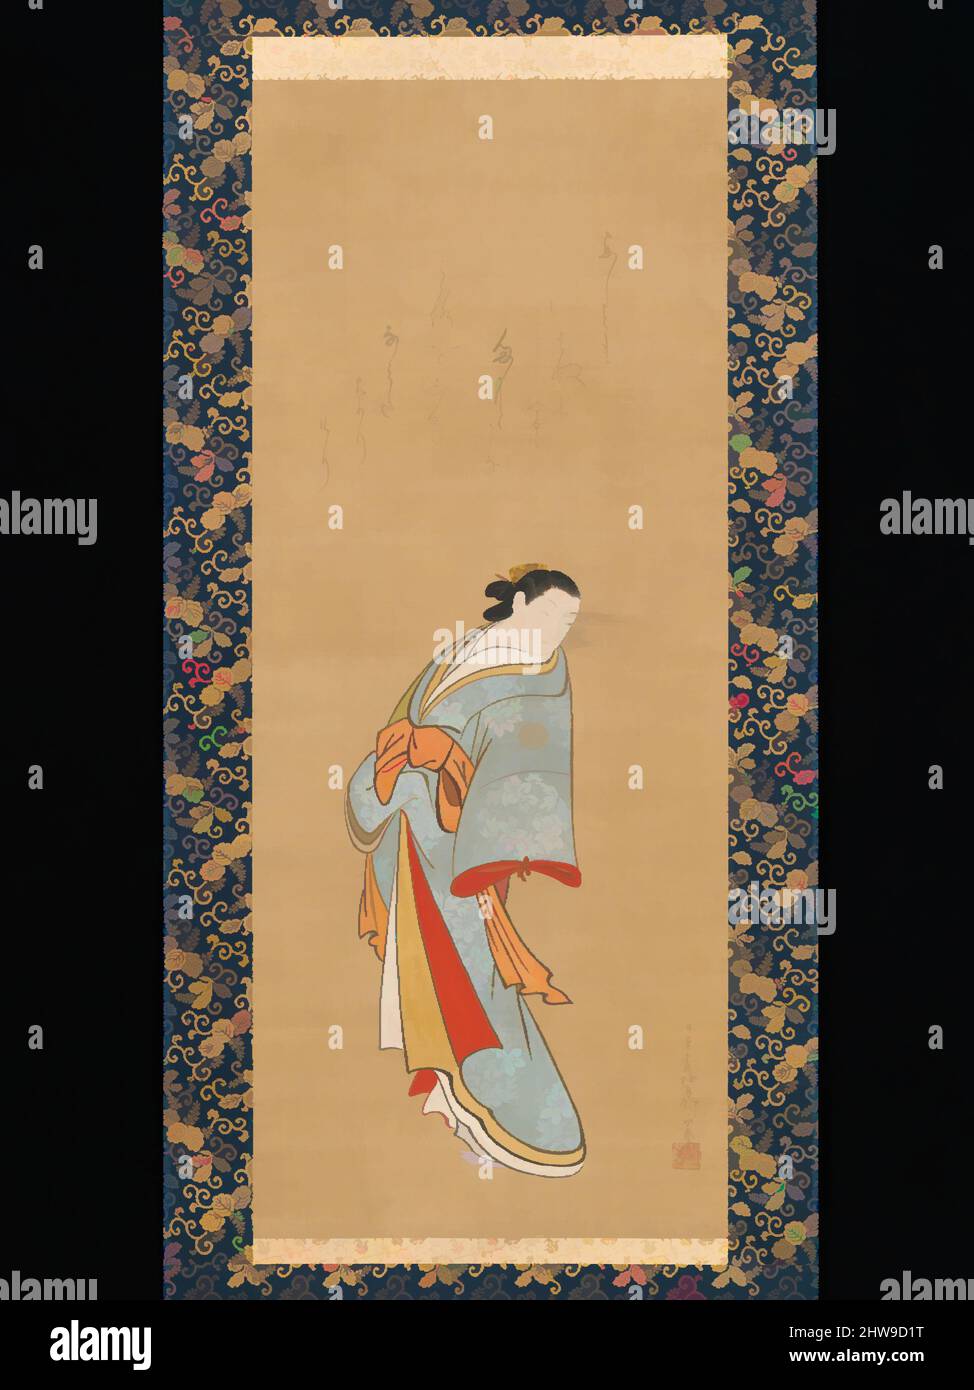 Art inspiré par 立姿遊女図, cours debout, période Edo (1615–1868), probablement 1720s, Japon, Rouleau suspendu; encre et couleur sur soie, image: 39 7/16 × 16 1/8 po. (100,2 × 41 cm), peintures, Baiōken Eishun (japonais, actif au début du 18th siècle), Baiōken Eishun a été parmi les artistes ukiyo-e, oeuvres classiques modernisées par Artotop avec un peu de modernité. Formes, couleur et valeur, impact visuel accrocheur sur l'art émotions par la liberté d'œuvres d'art d'une manière contemporaine. Un message intemporel qui cherche une nouvelle direction créative. Artistes qui se tournent vers le support numérique et créent le NFT Artotop Banque D'Images